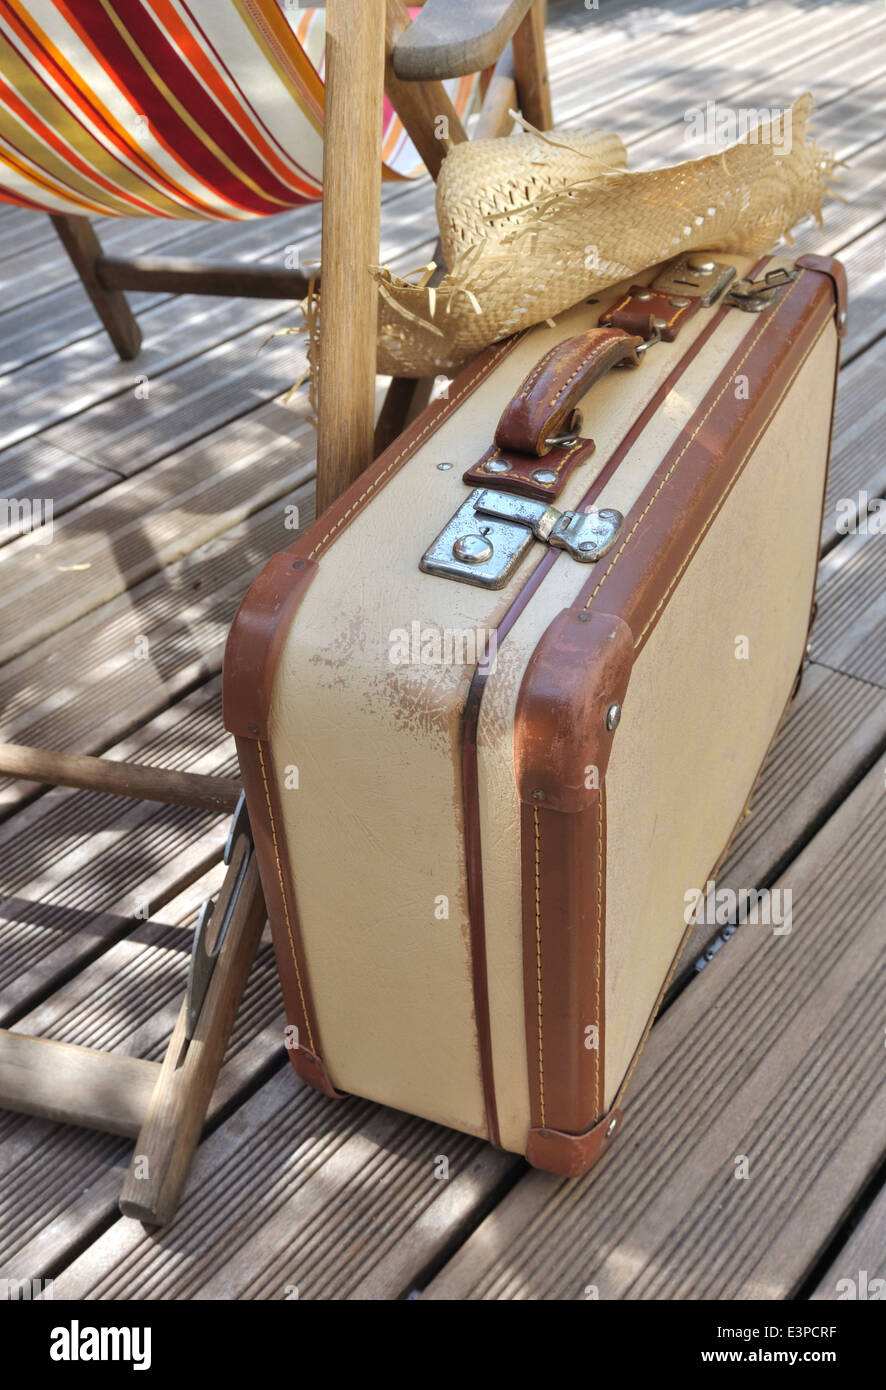 Strohhut auf kleine Retro-Koffer neben einem Liegestuhl auf Holzterrasse Stockfoto